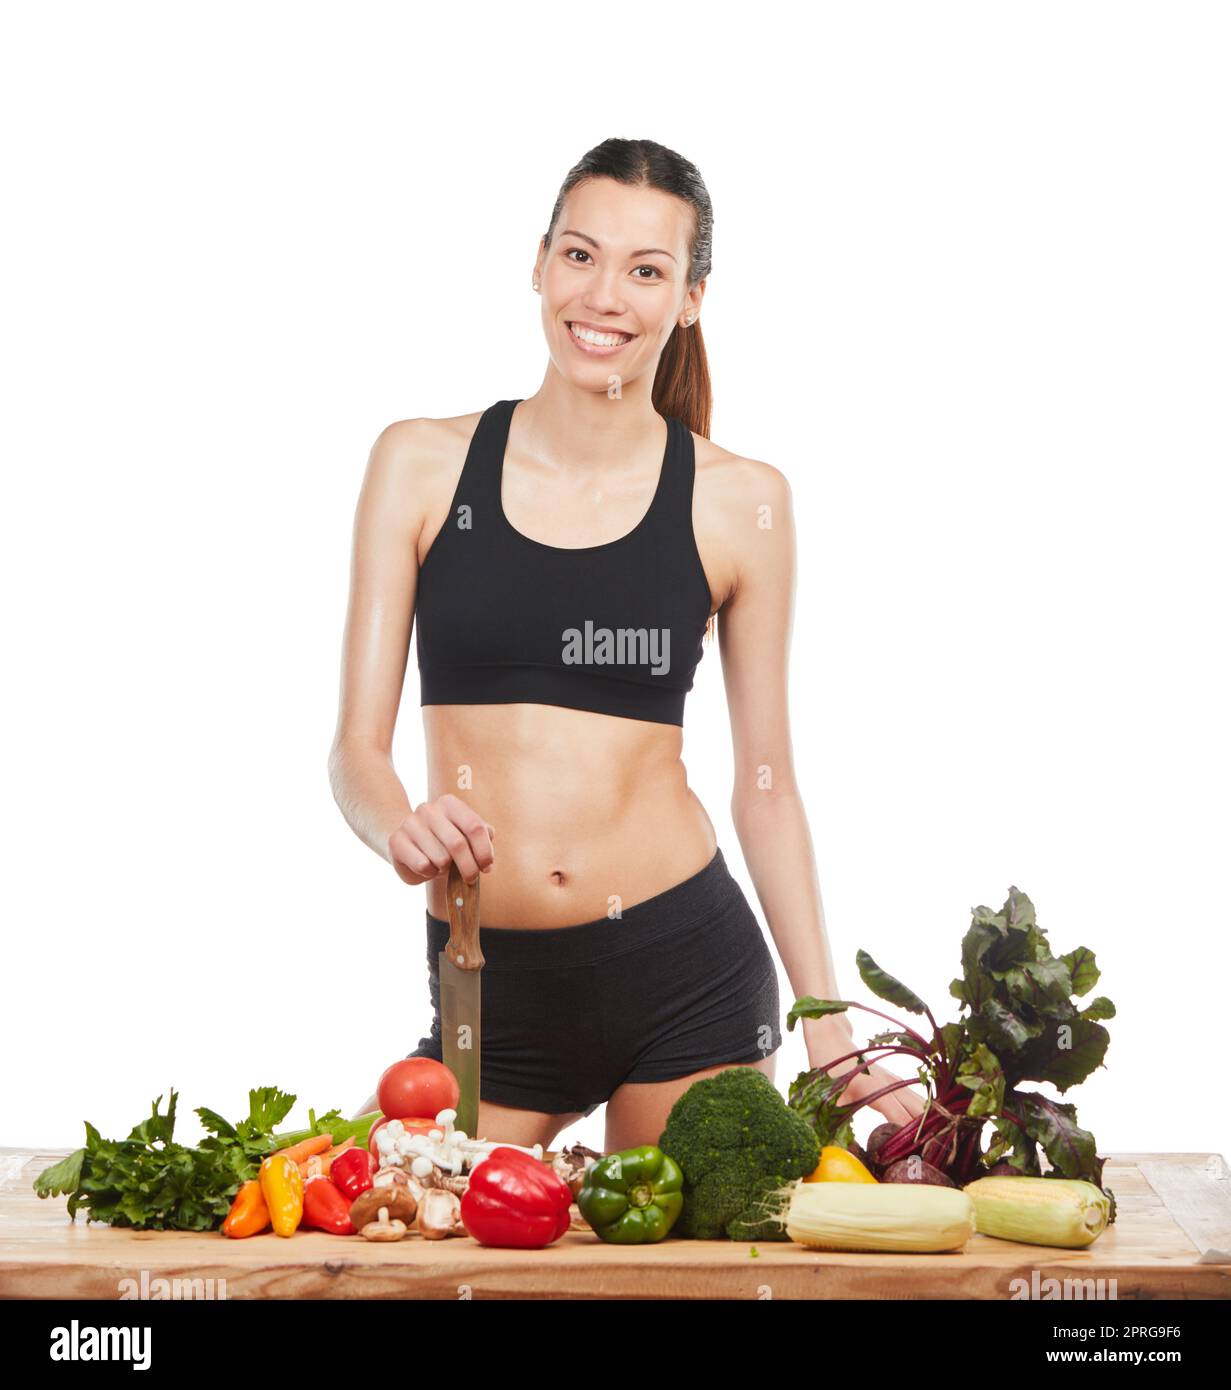 Se sentir bien au sujet des choix sains. Studio portrait d'une jeune femme attrayante posant avec une table pleine de légumes sur un fond blanc. Banque D'Images